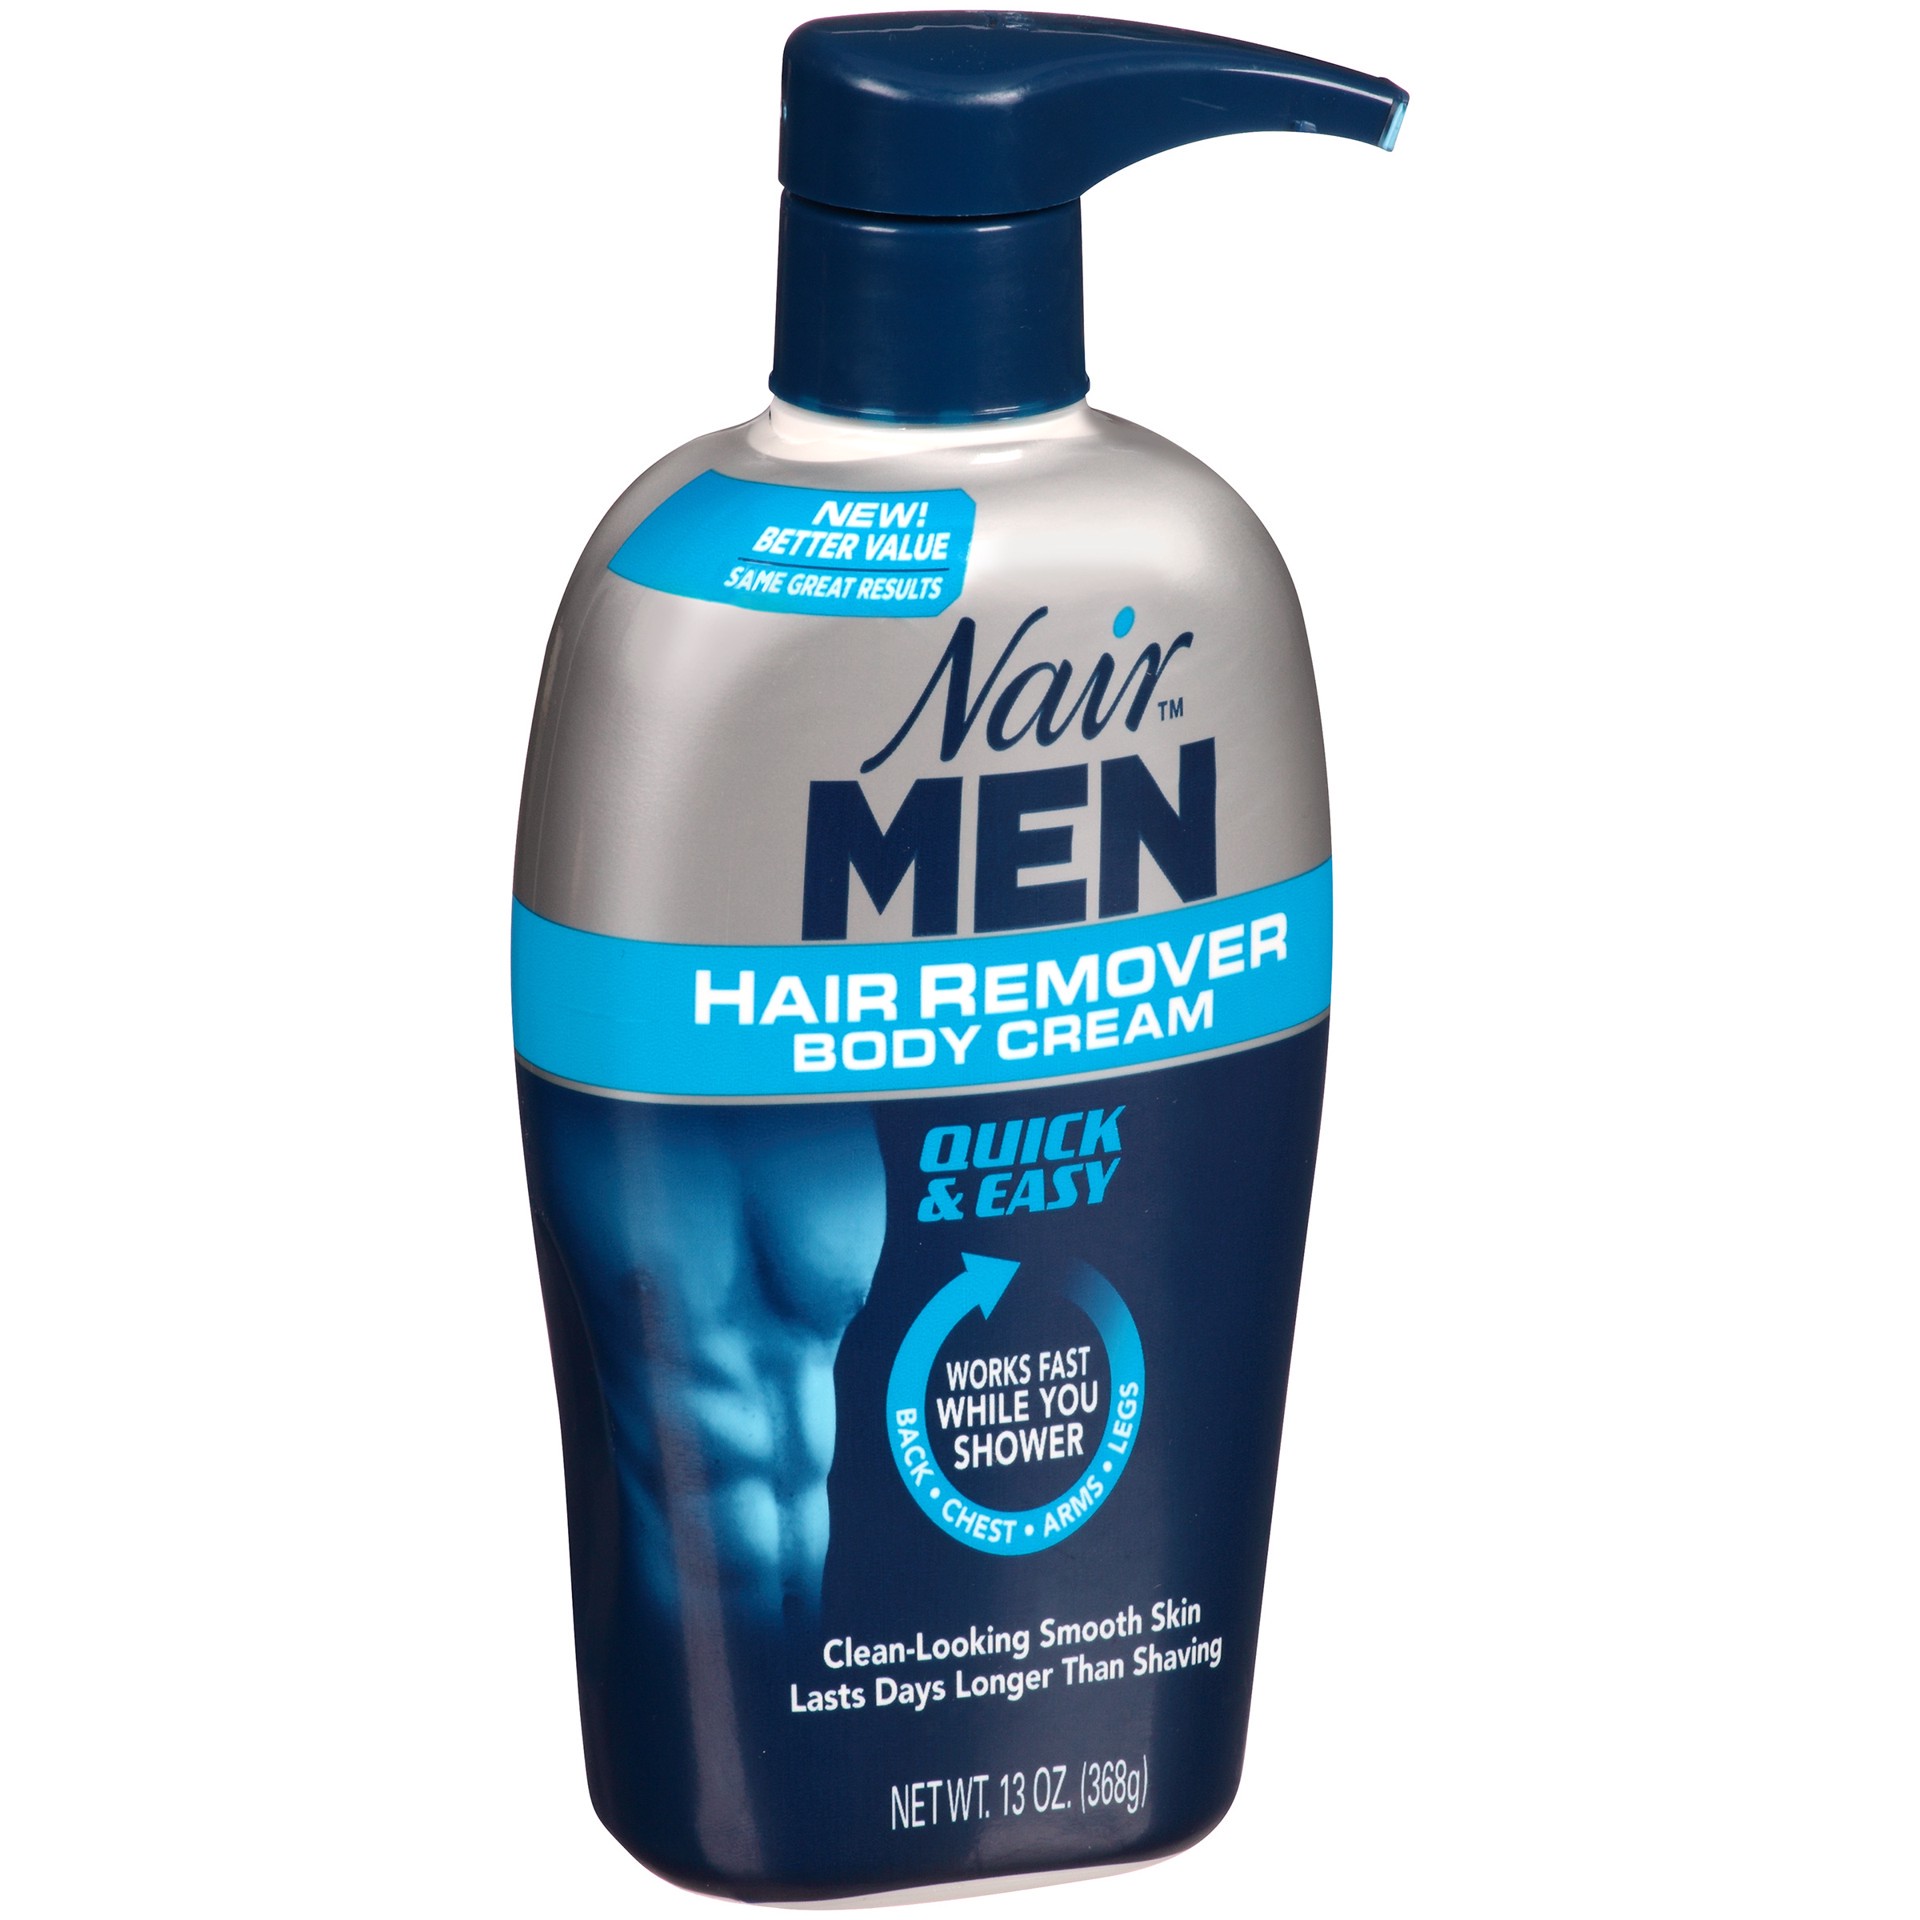 slide 3 of 4, Nair Men Hair Remover Body Cream, 13 oz